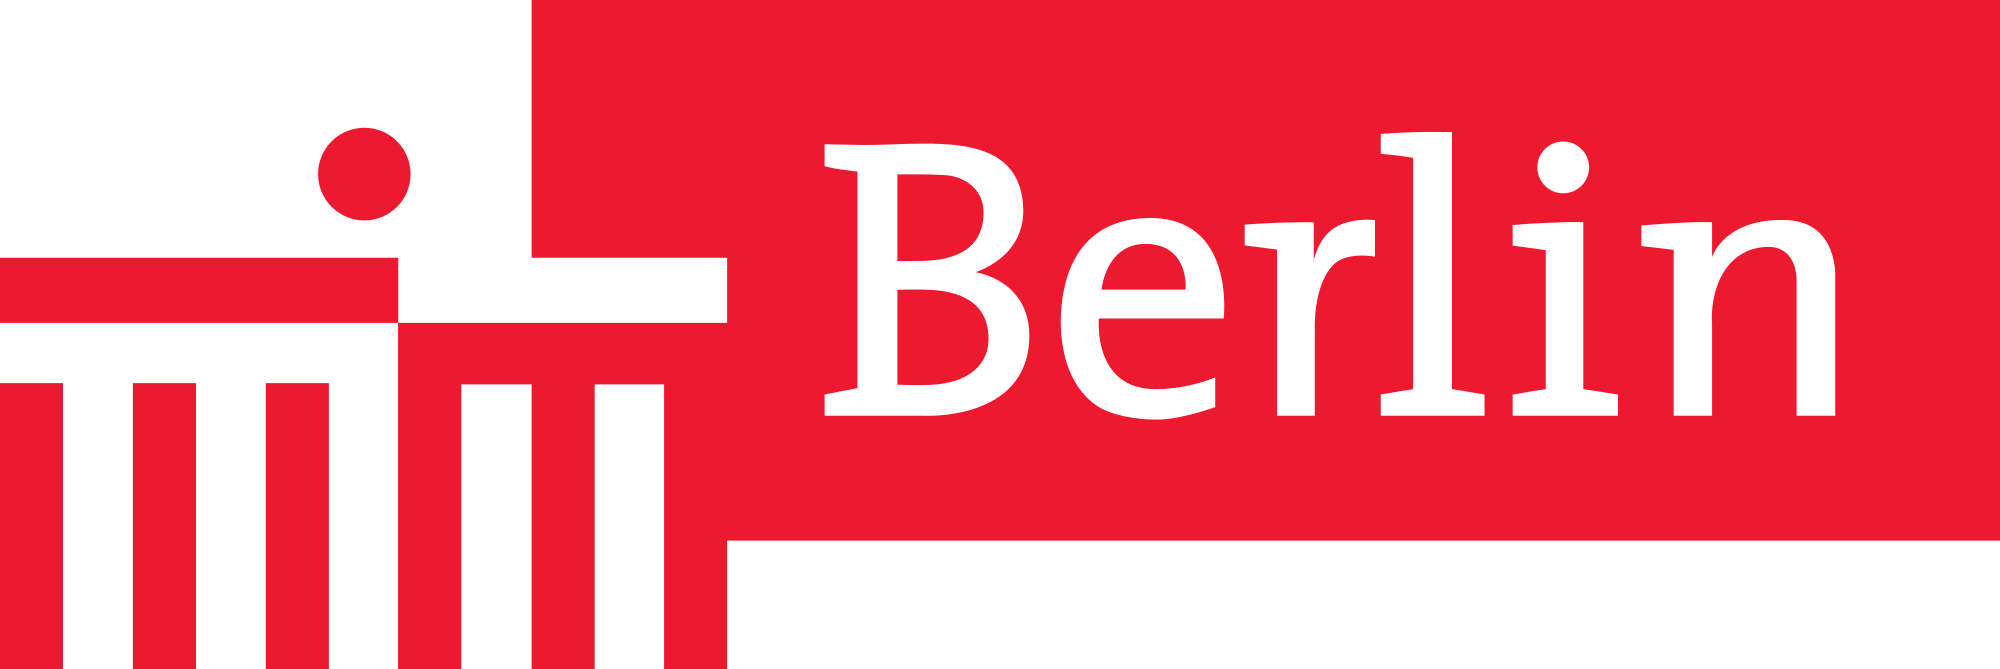 Ordnungsamt Berlin Logo